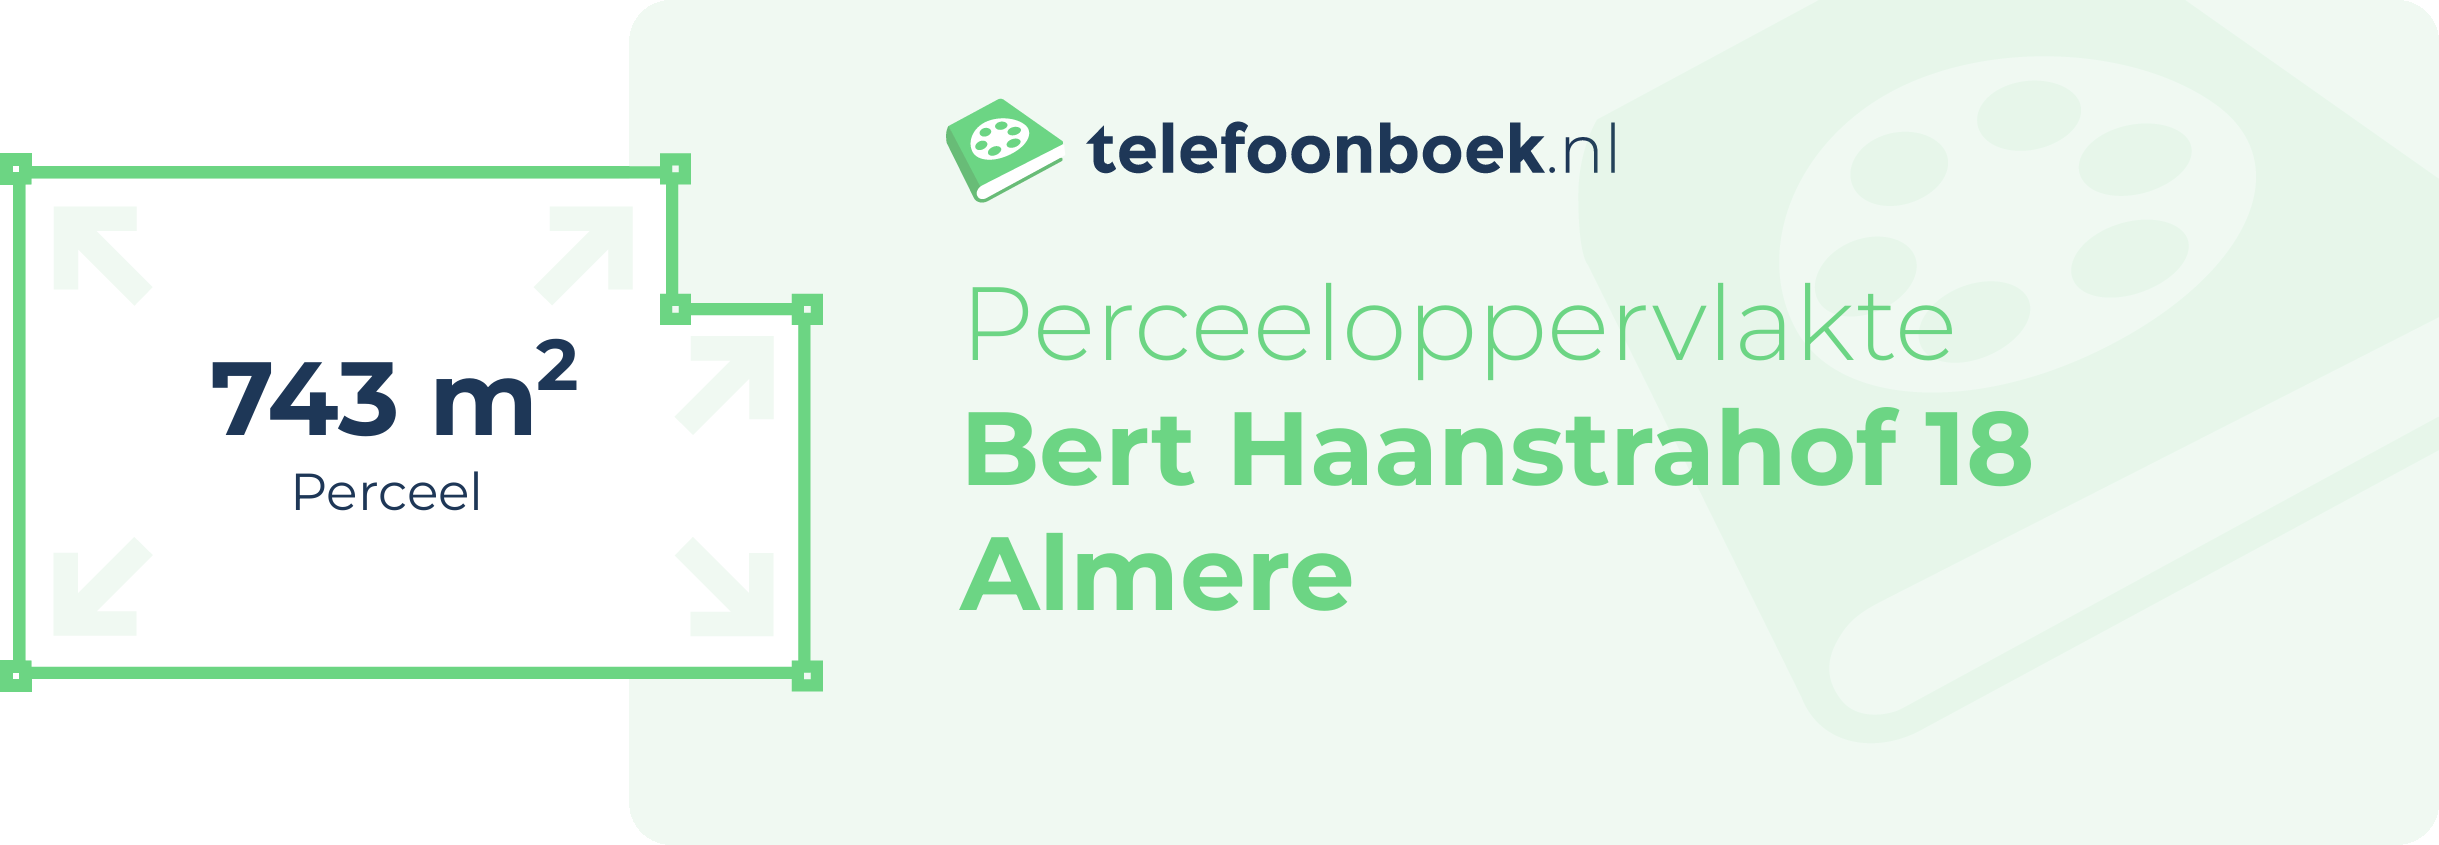 Perceeloppervlakte Bert Haanstrahof 18 Almere